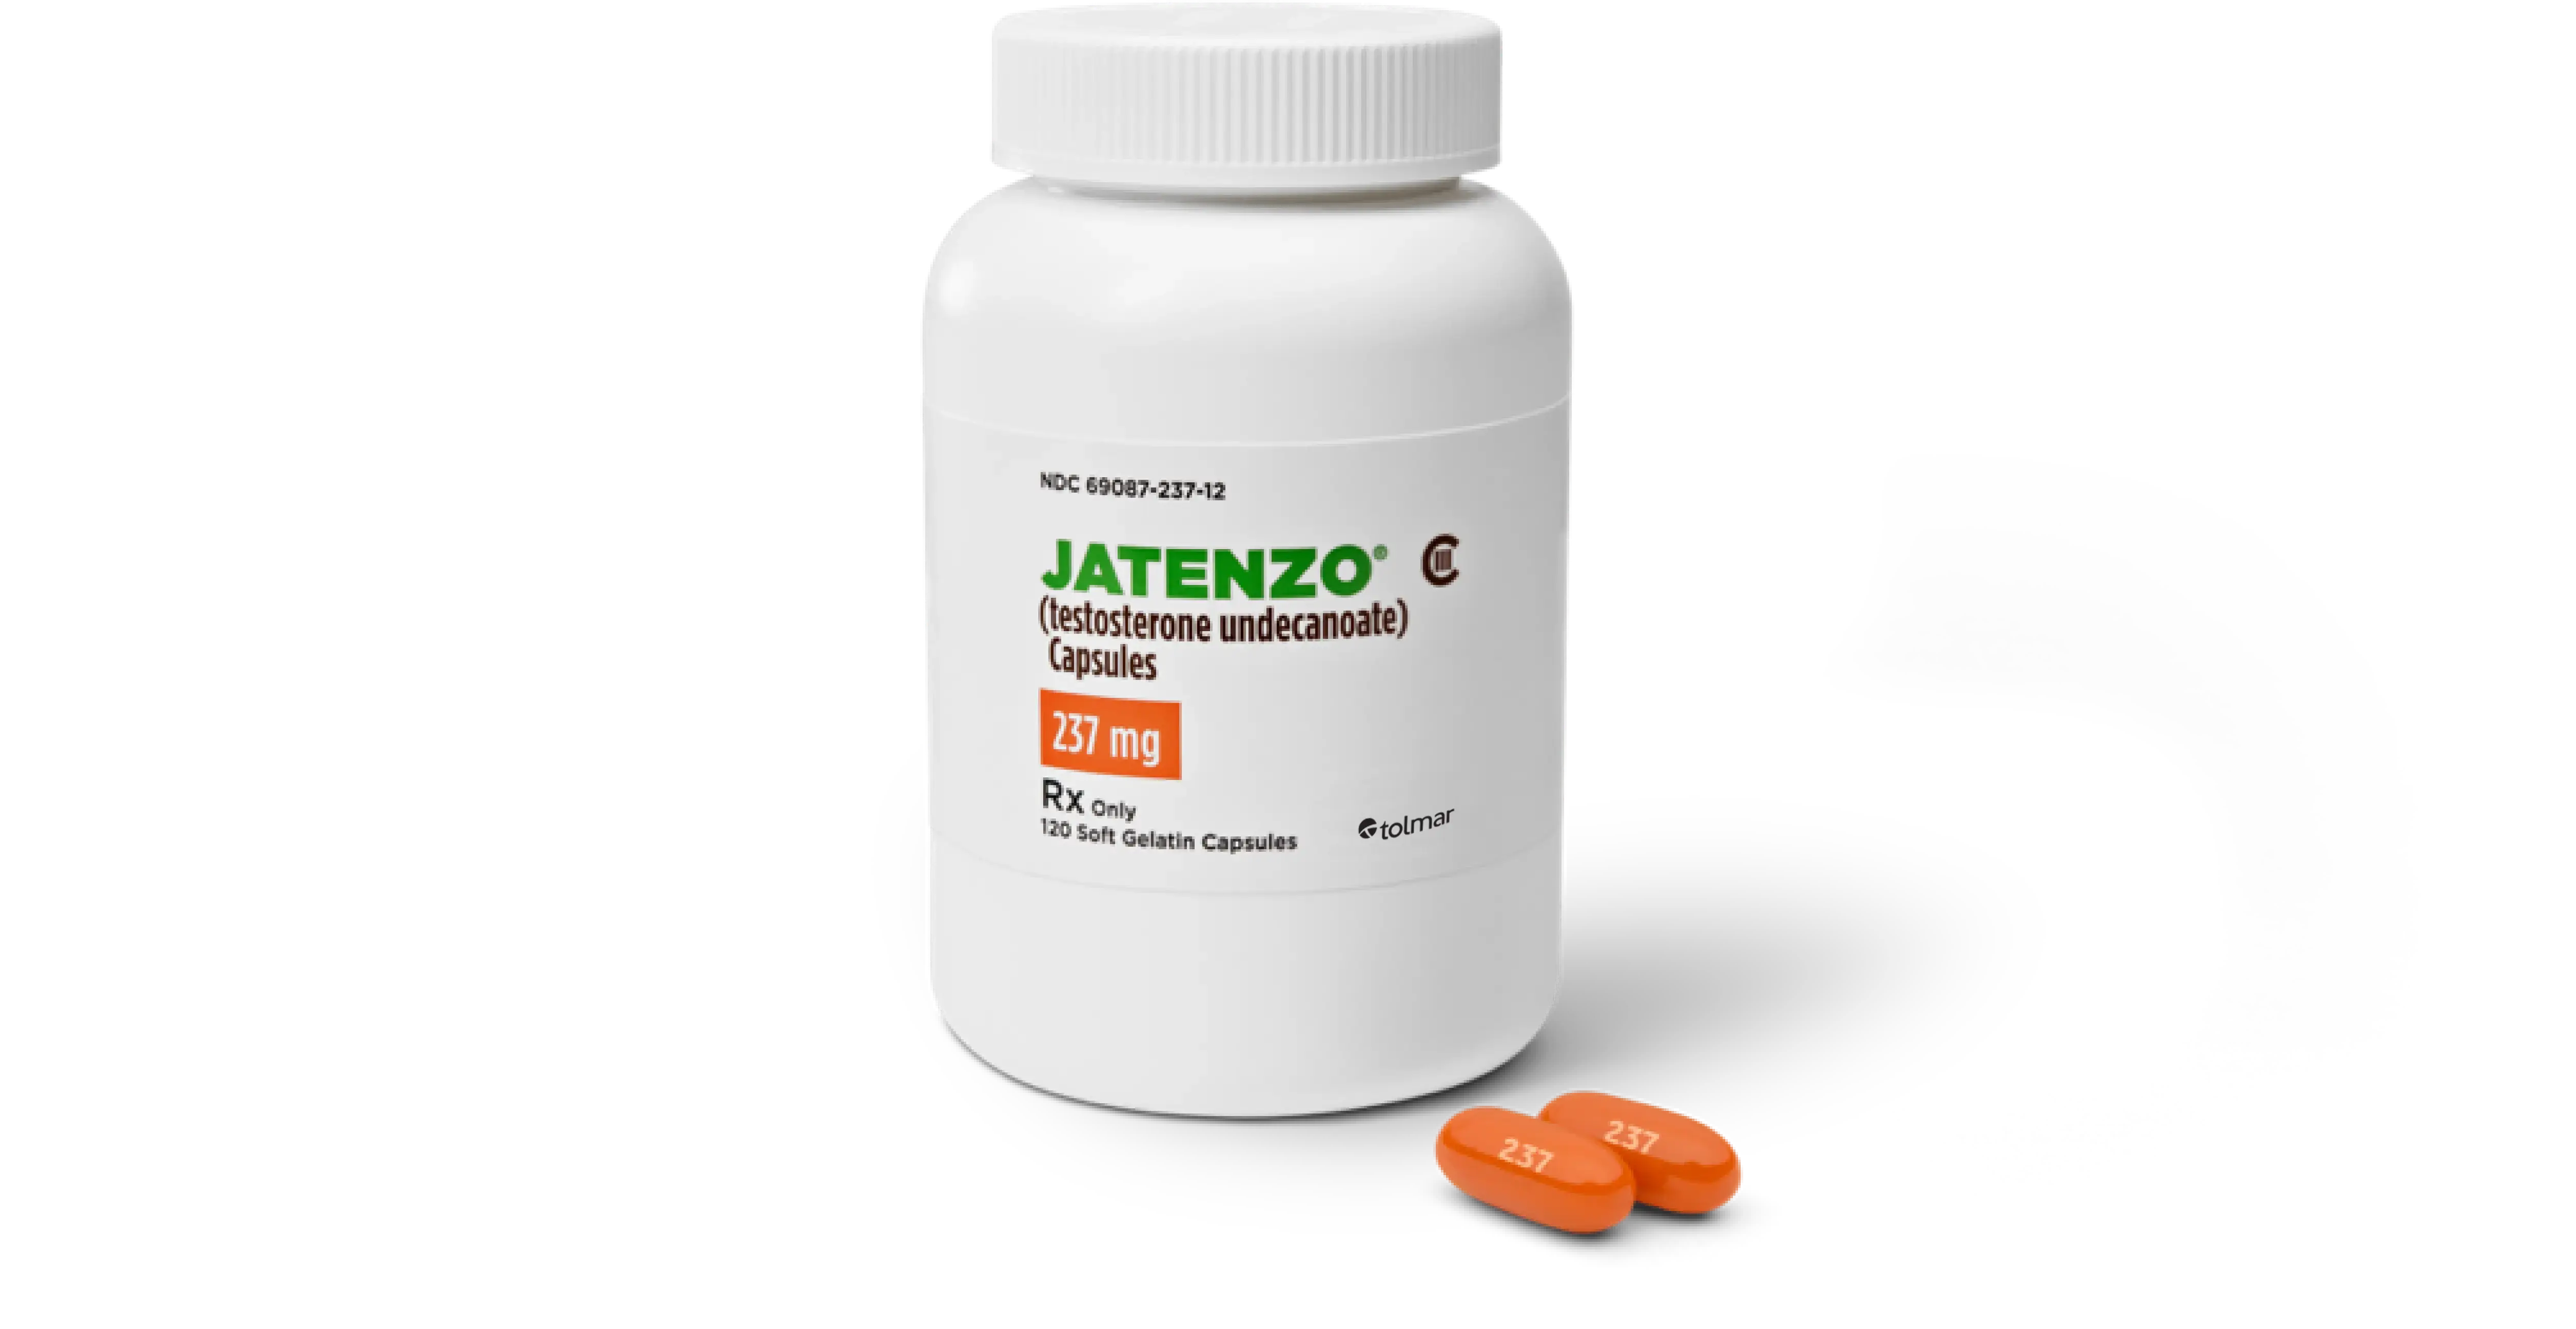 White pill bottle of JATENZO®.